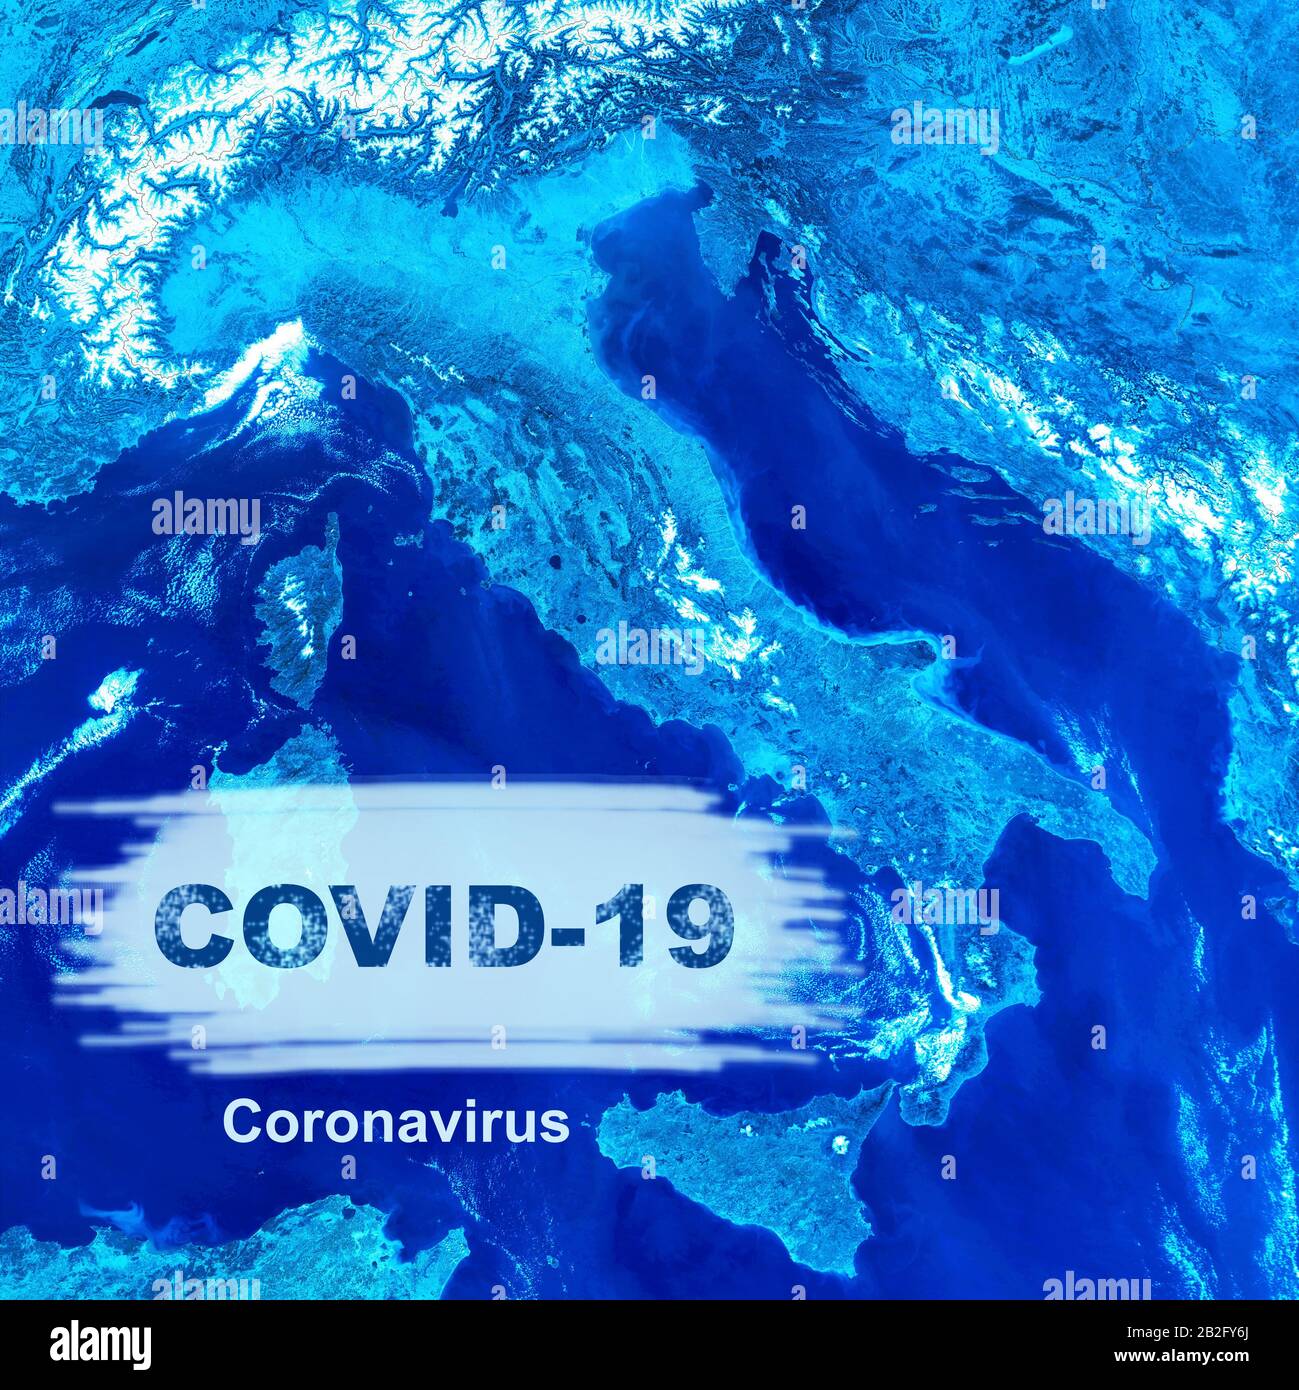 Coronavirus Epidemie, Wort COVID-19 auf Italien Karte. Neuartiger Coronavirus-Ausbruch in China, die Verbreitung des Corona-Virus in Europa. Infektion und Einschränkung Stockfoto